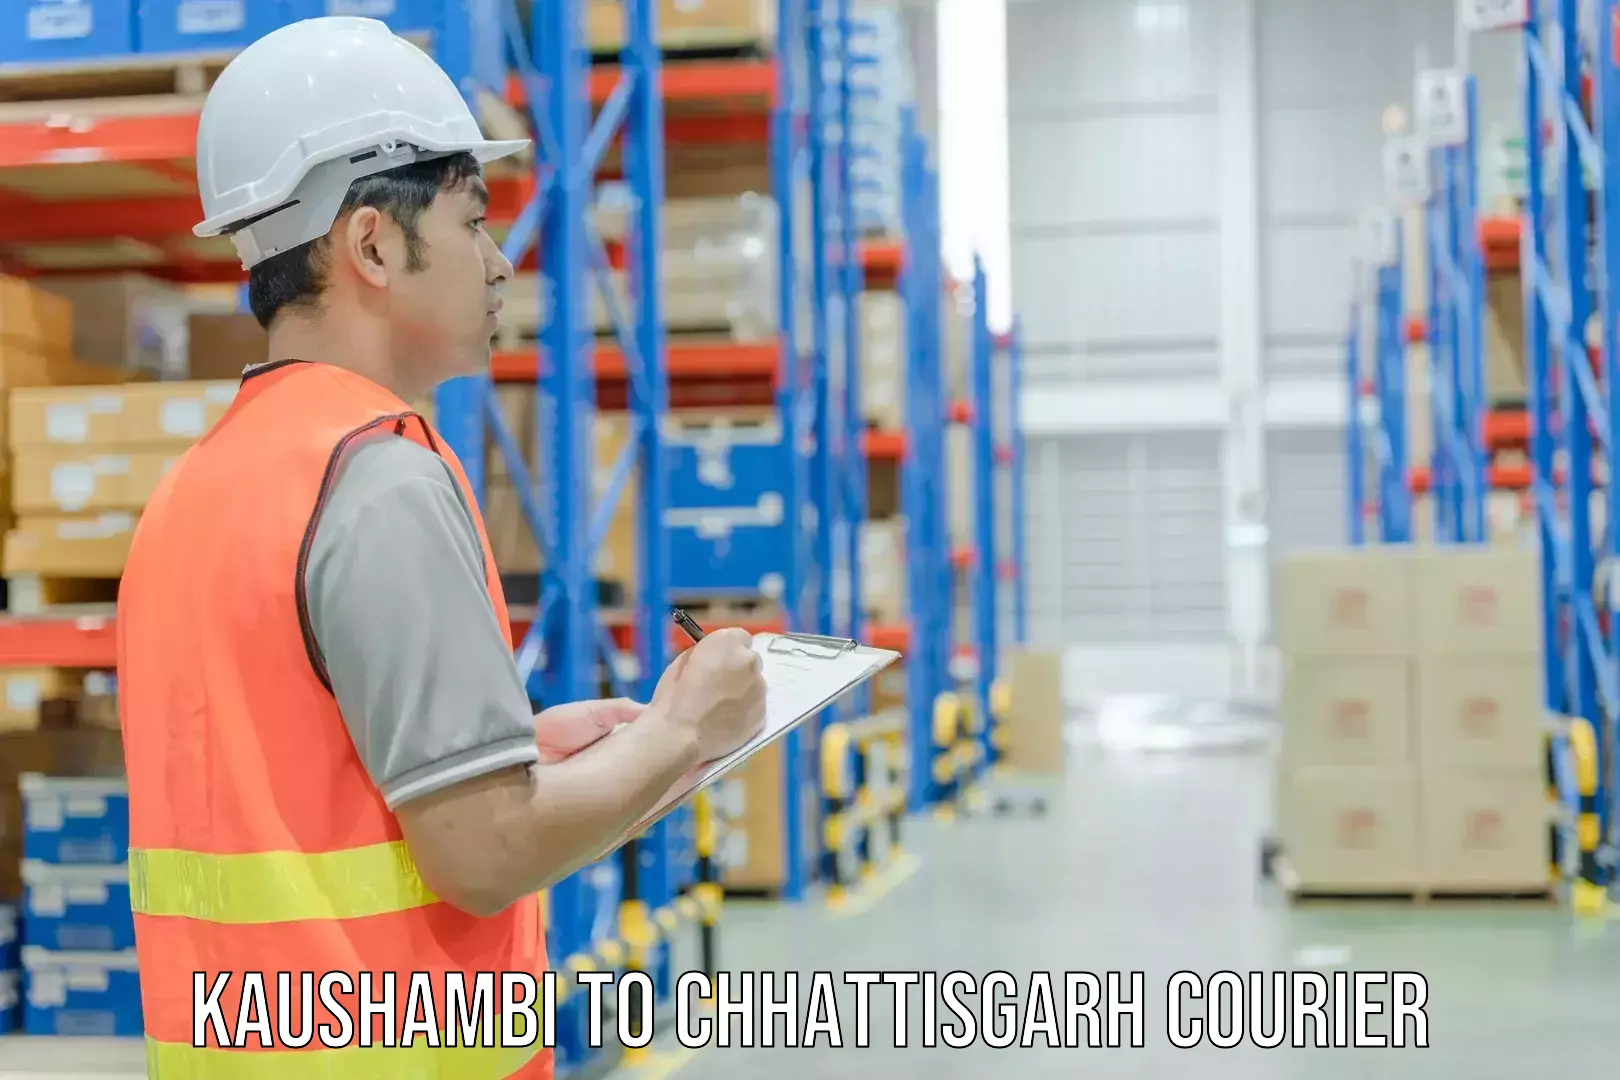 Business shipping needs Kaushambi to Patna Chhattisgarh